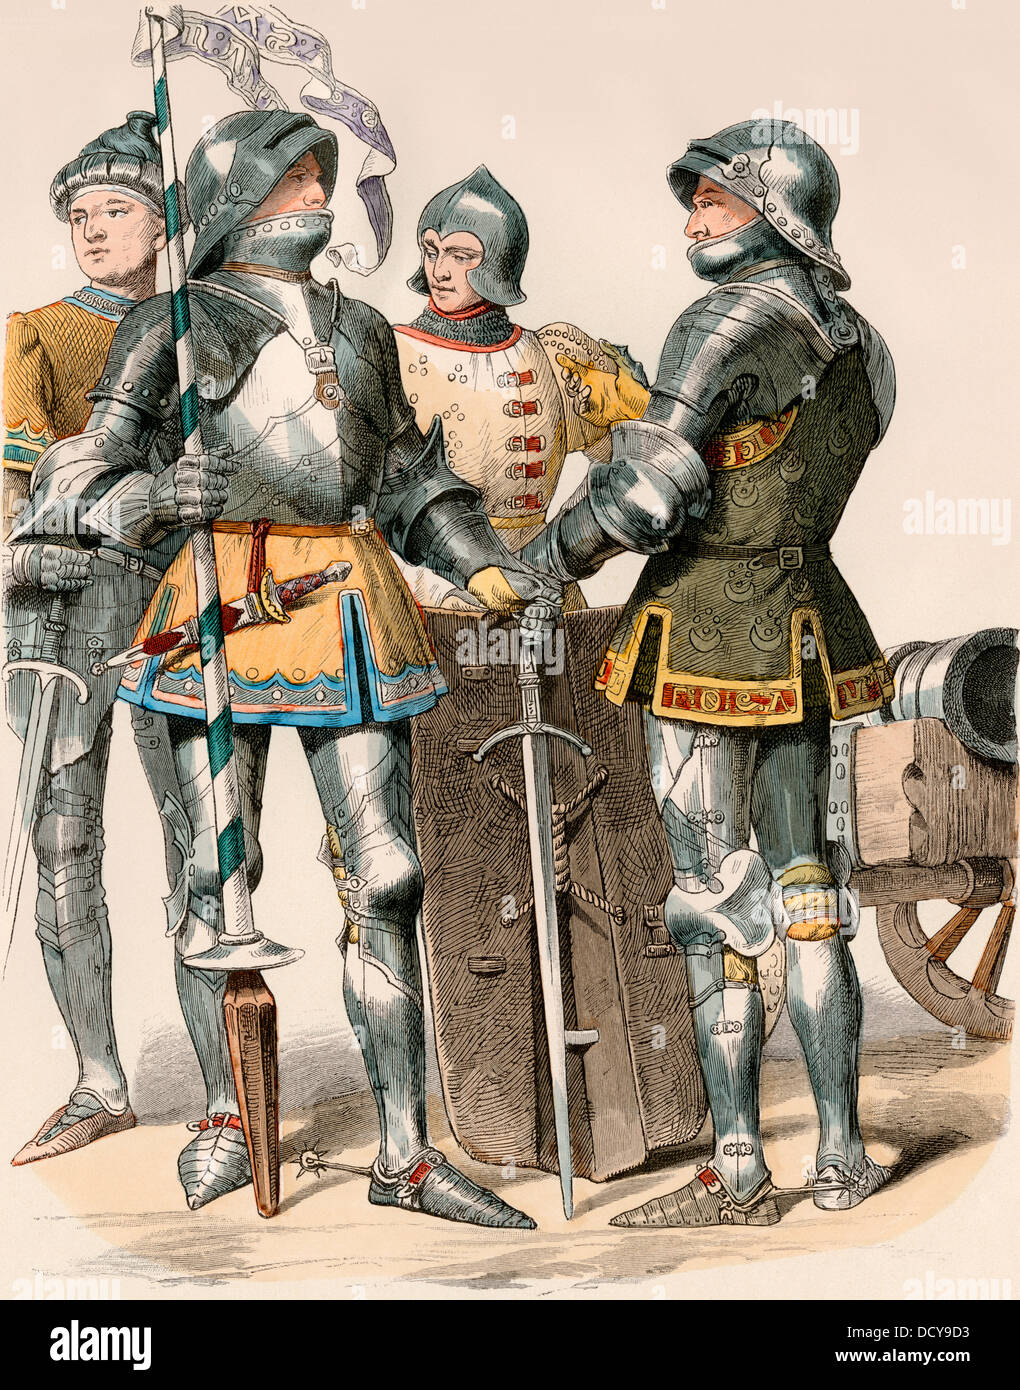 Chevaliers en armure de plaque bourguignonne, 1470. Impression couleur à la main Banque D'Images